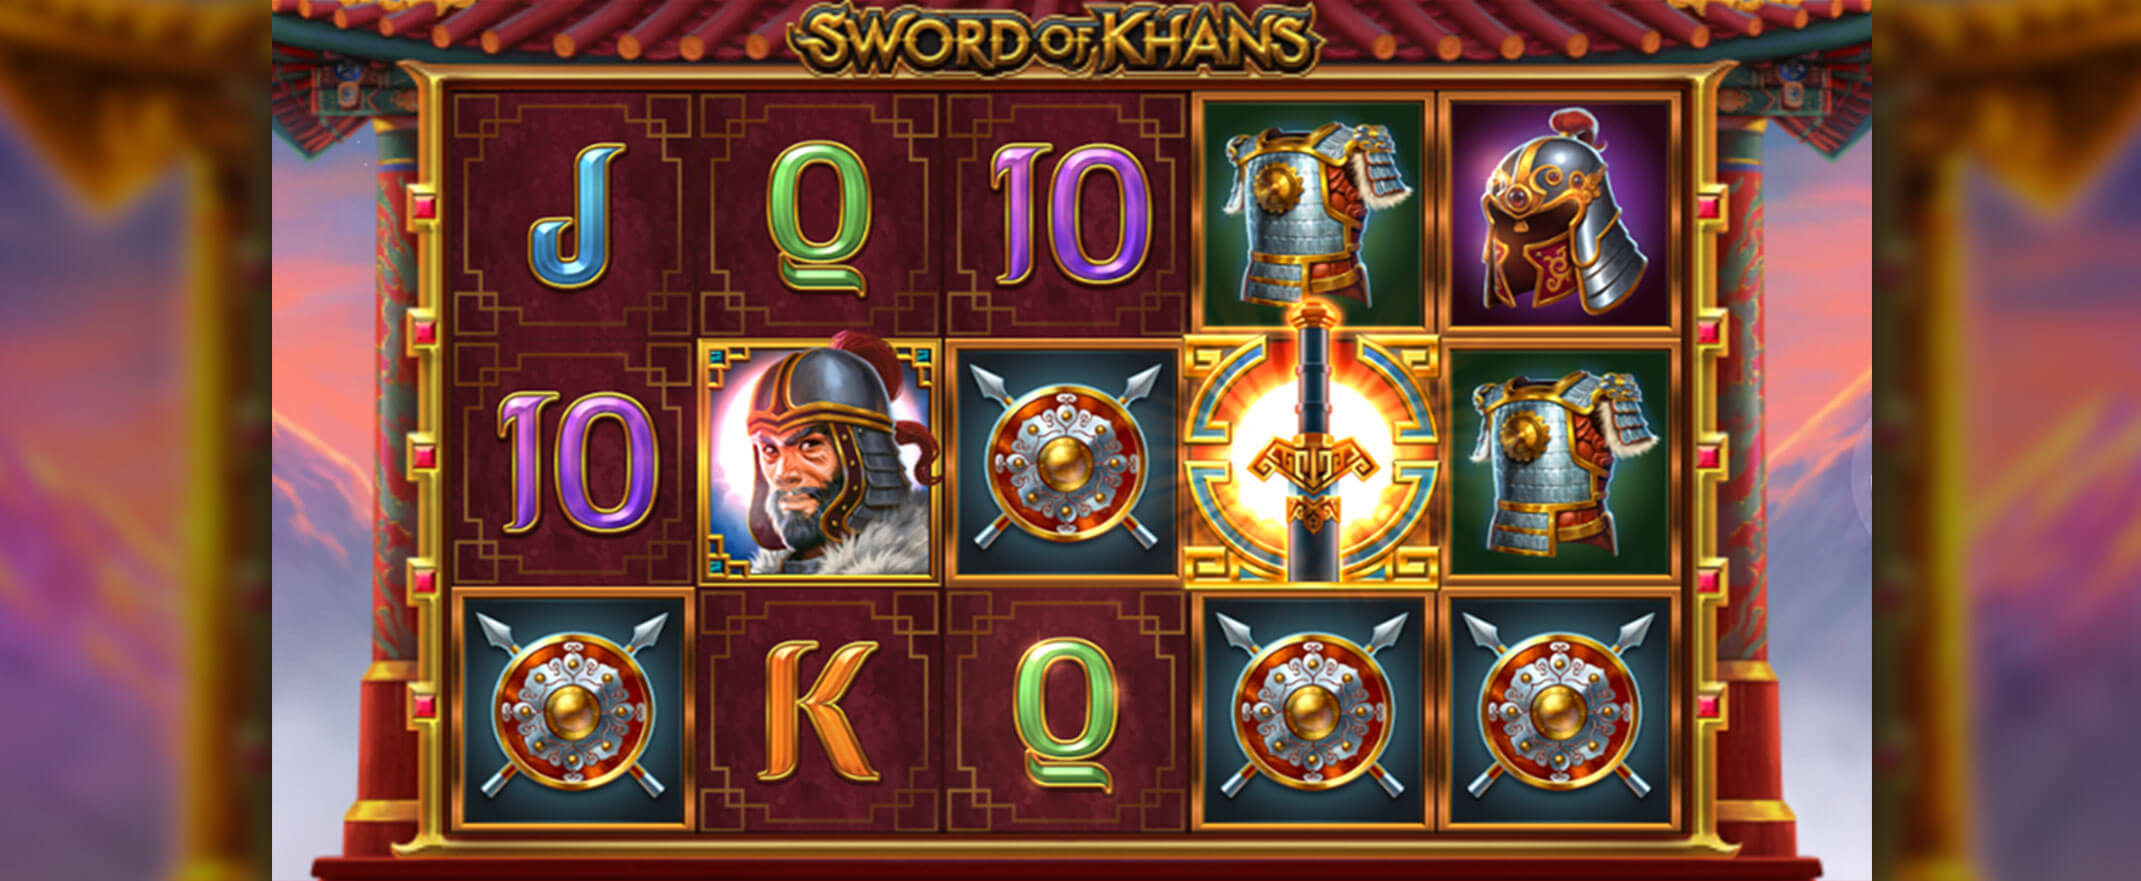 Sword of Khans Spielautomat spielen